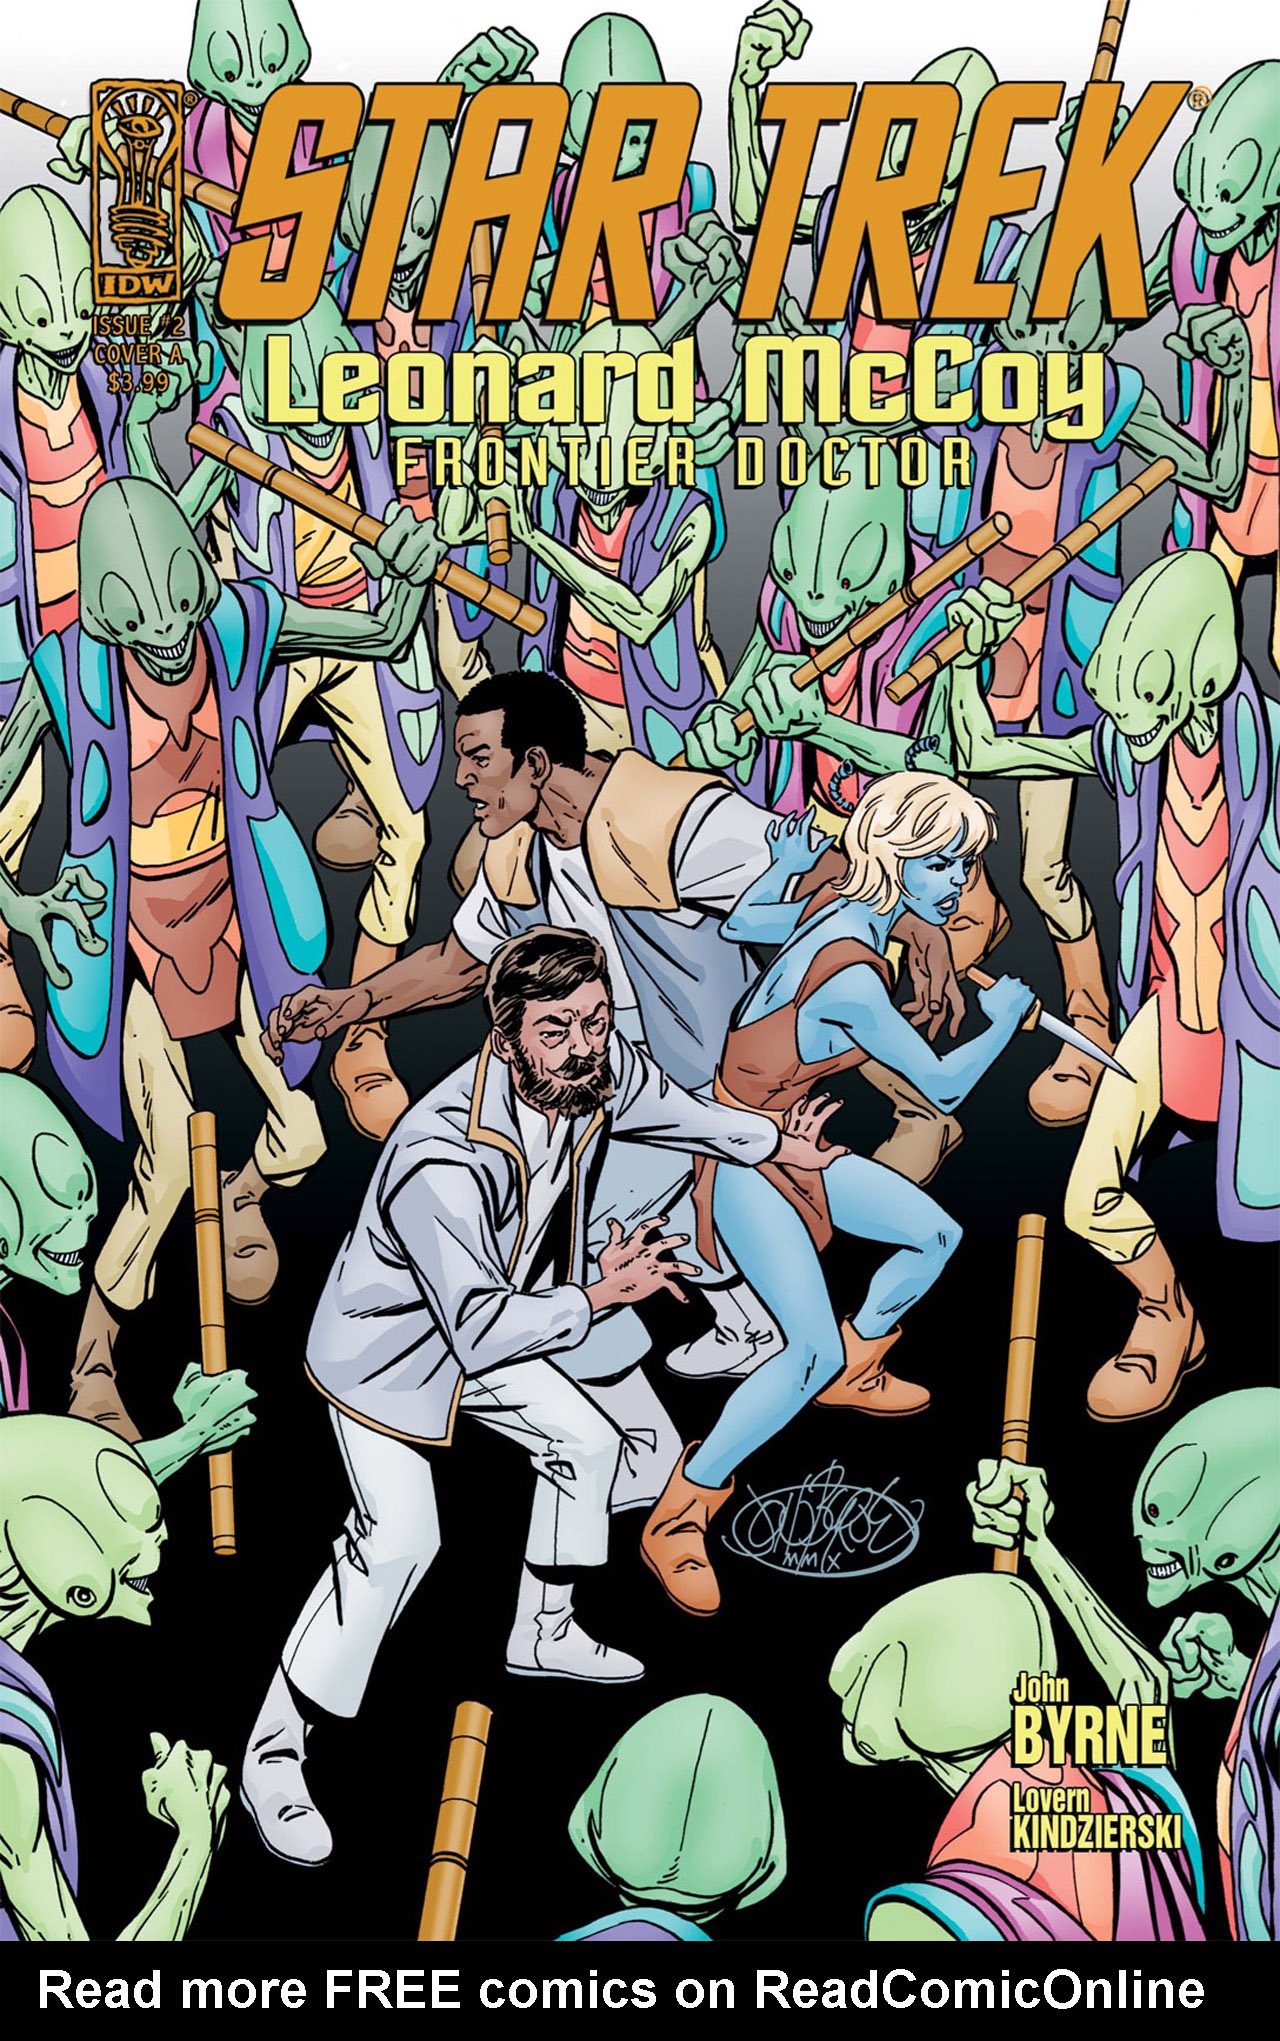 Read online Star Trek: Leonard McCoy, Frontier Doctor comic -  Issue #2 - 1